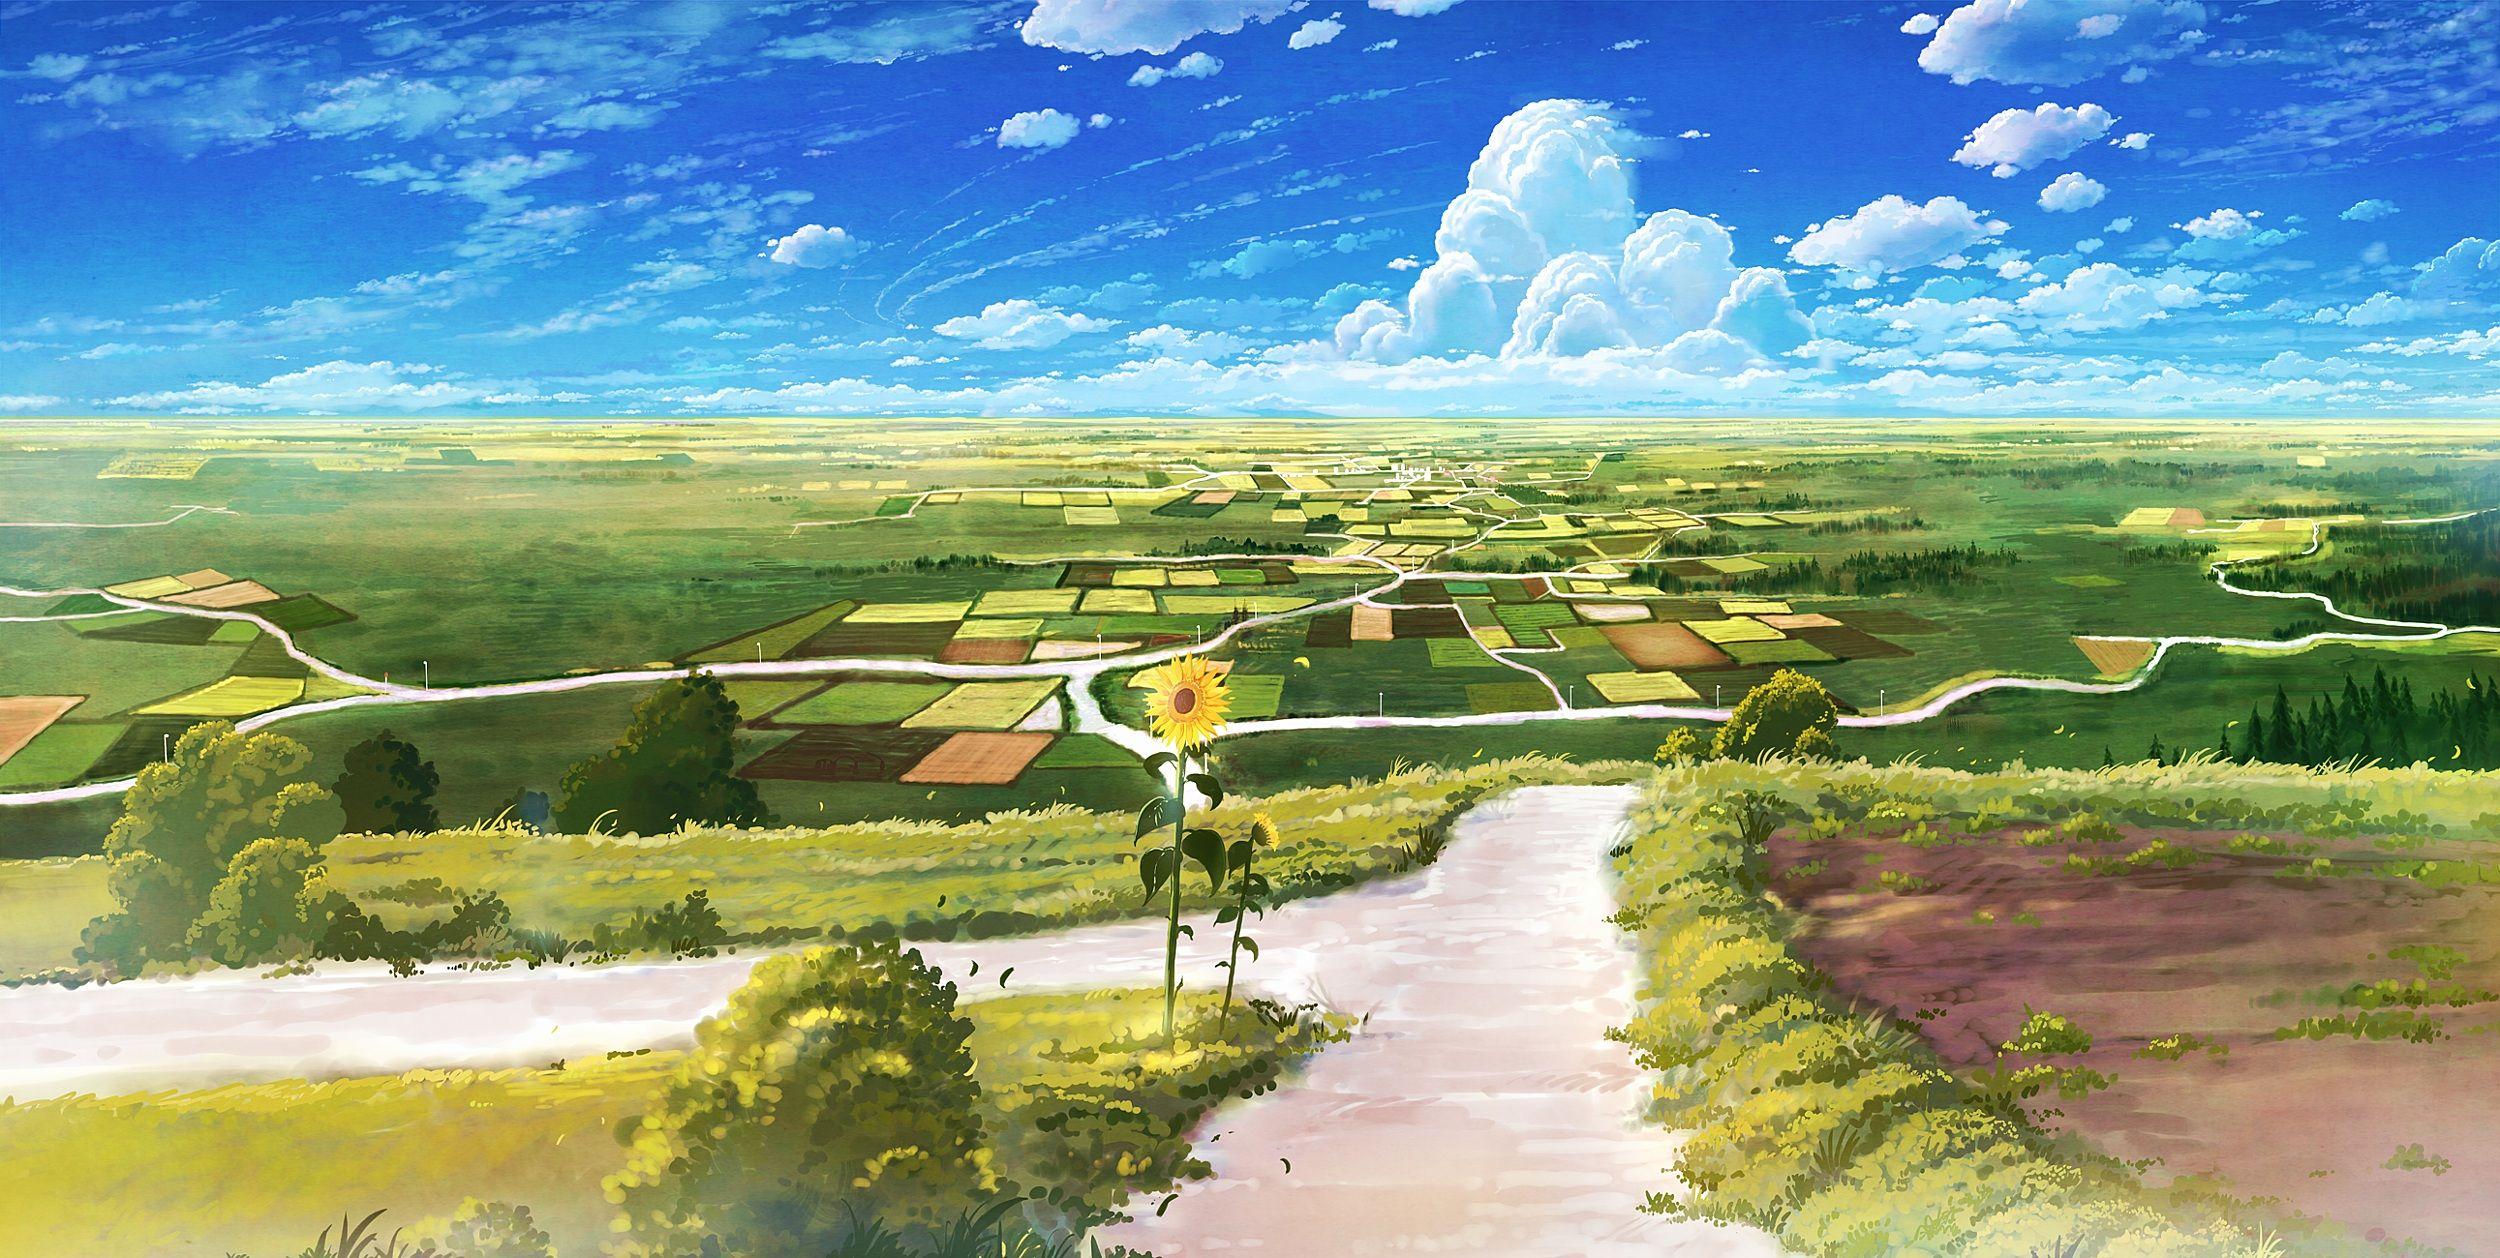 anime spring landscape